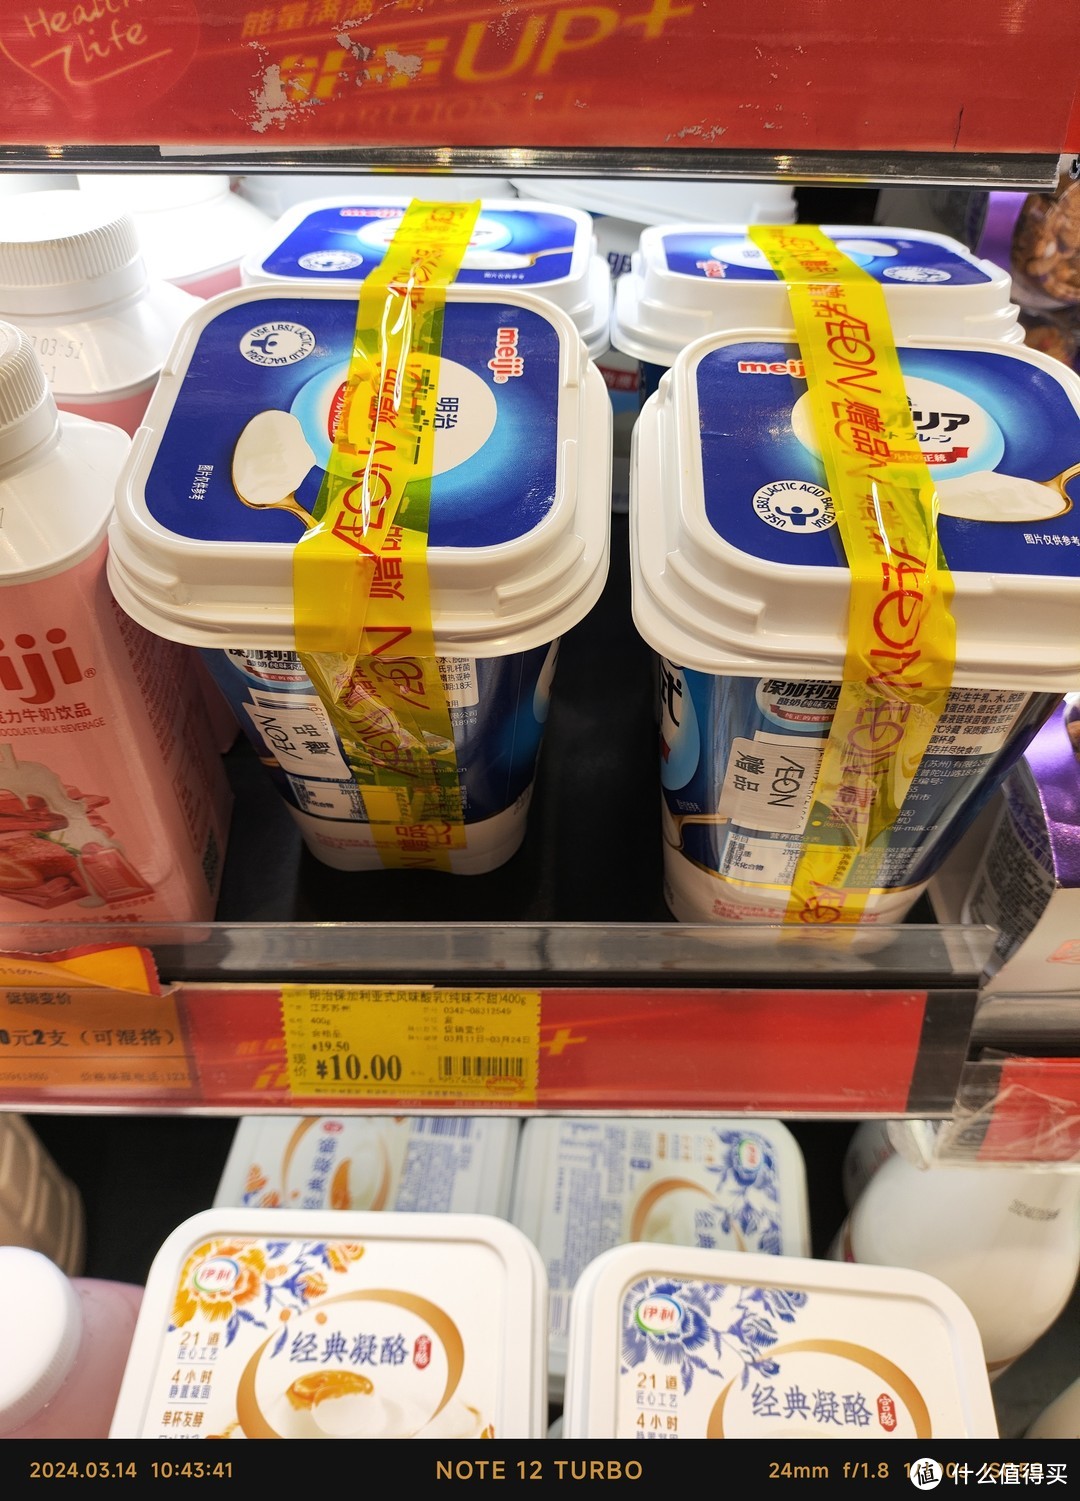 10元2杯的明治保加利亚式酸奶值得买吗？